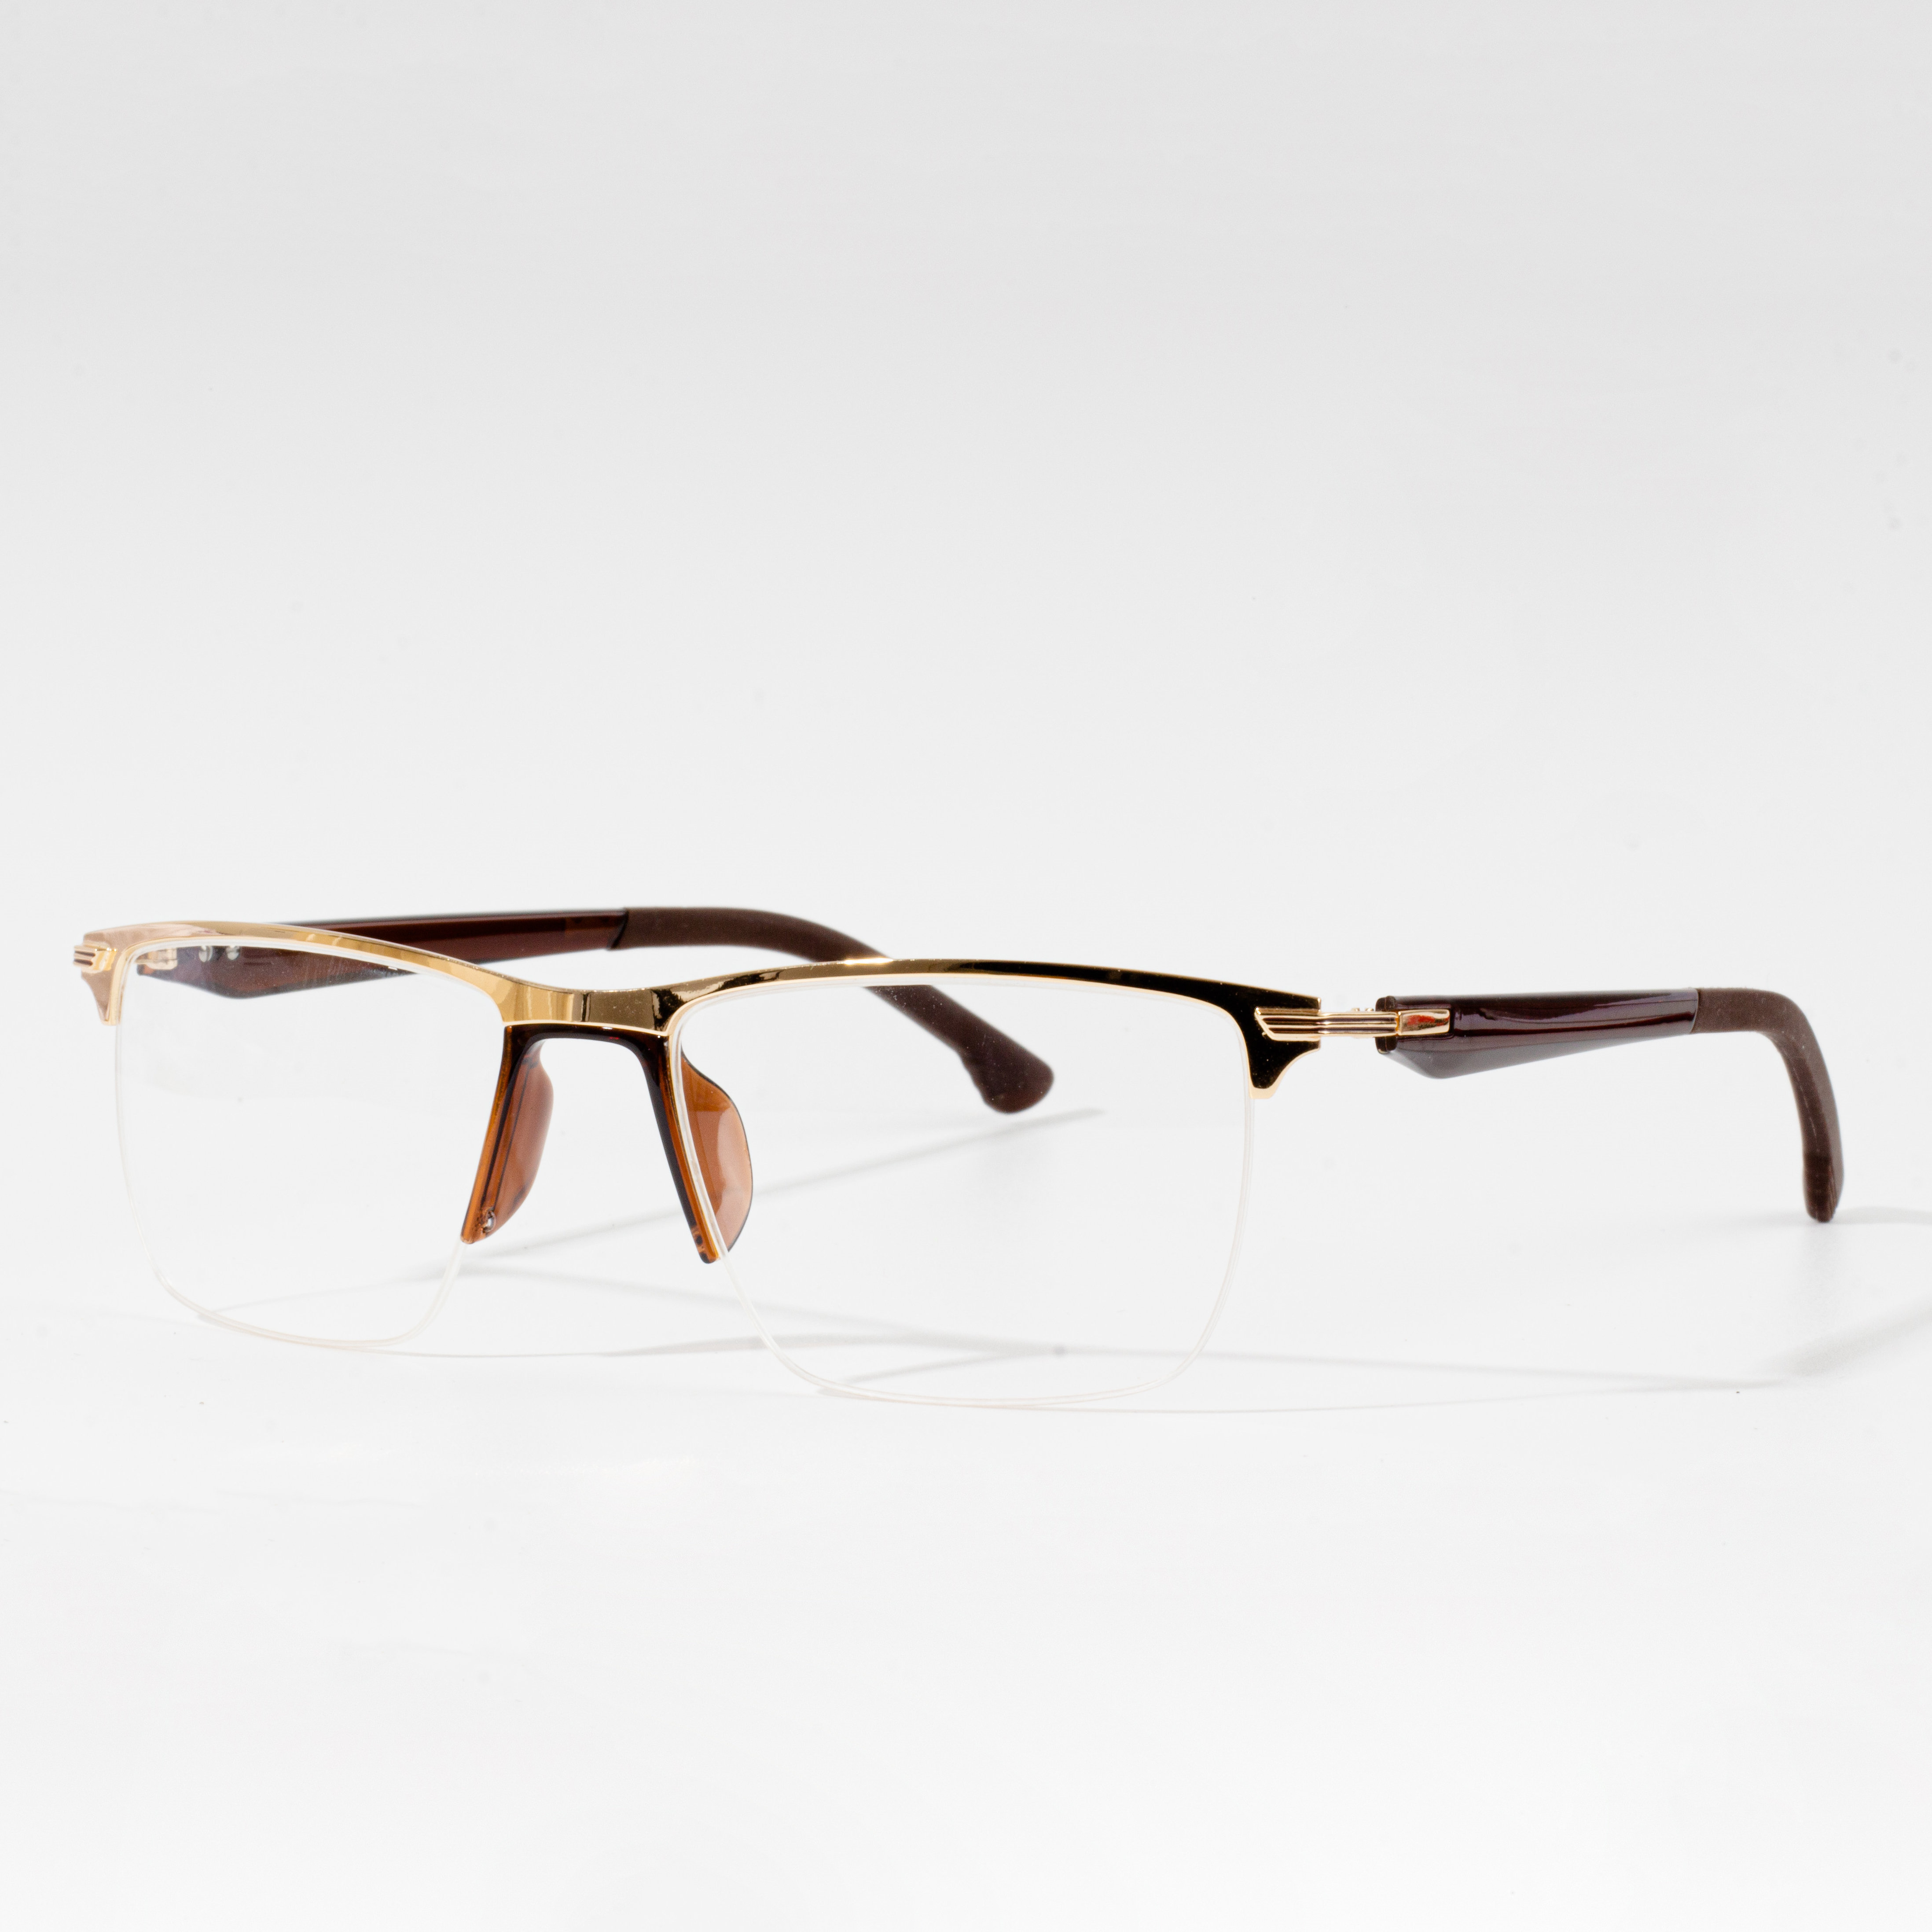 Muntura d'ulleres quadrades metàl·liques